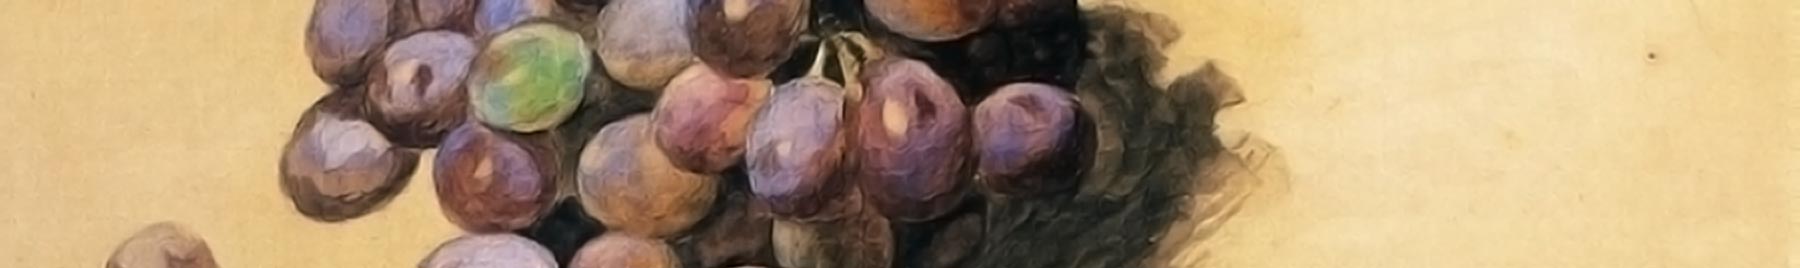 William Merritt Chase, detail, “Topaz Grapes”